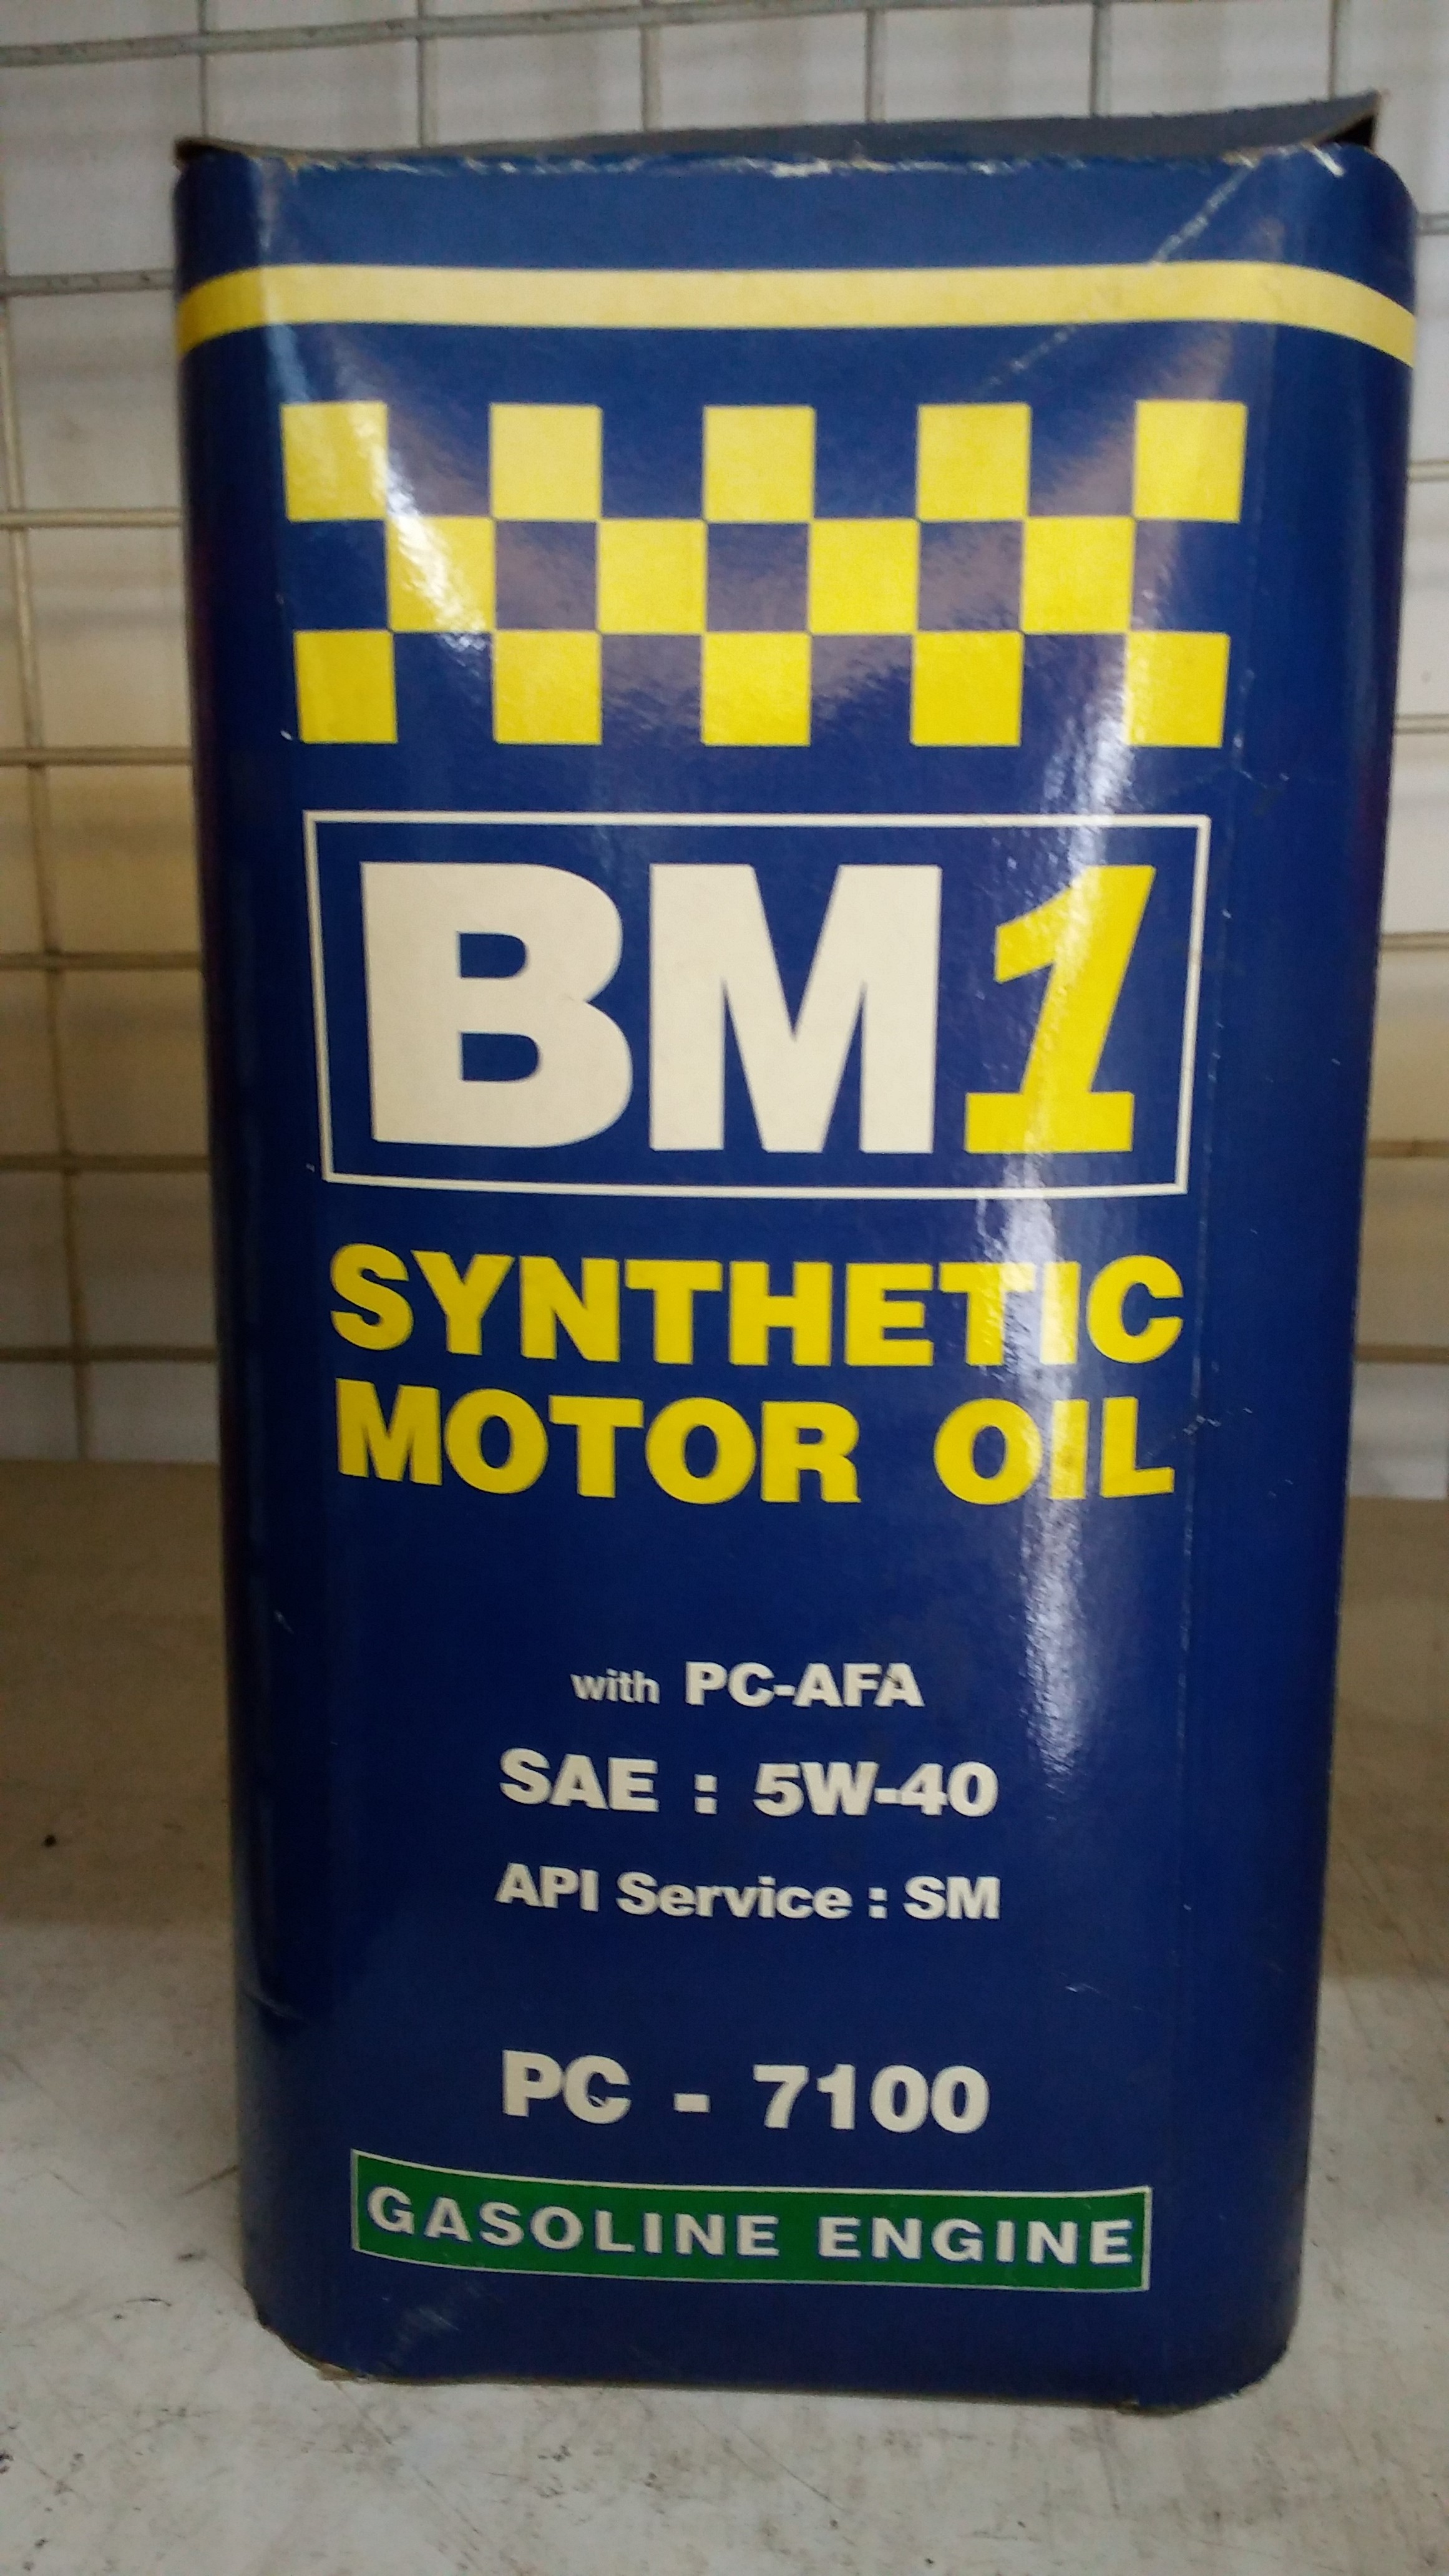 Bm 1 Syntetic Motor Oil Gasolin Engine 5W-40